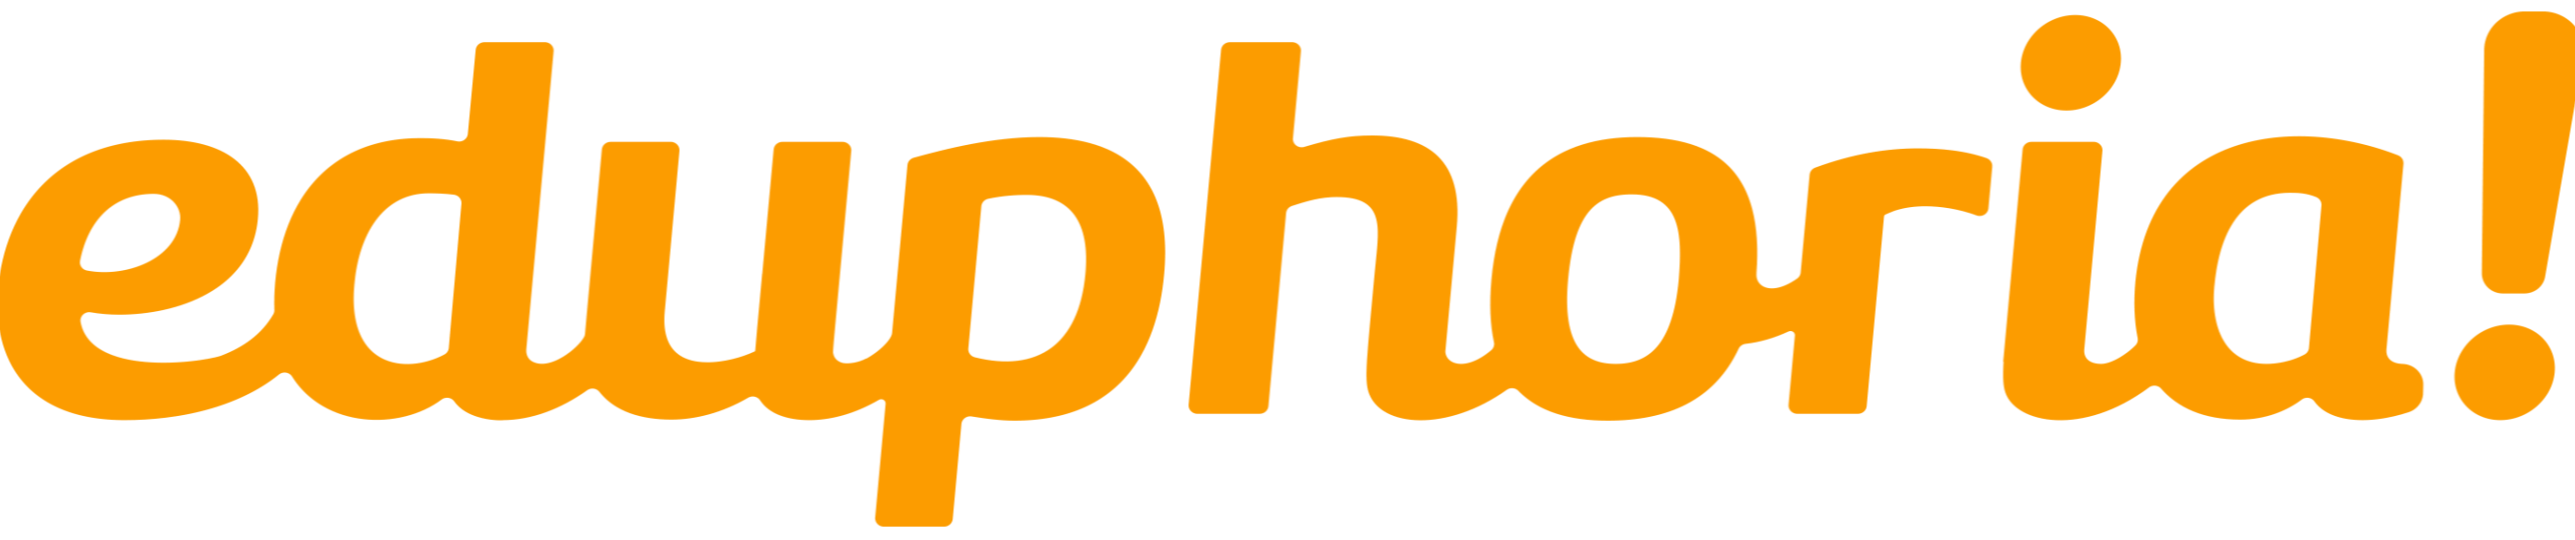 eduphoria! logo